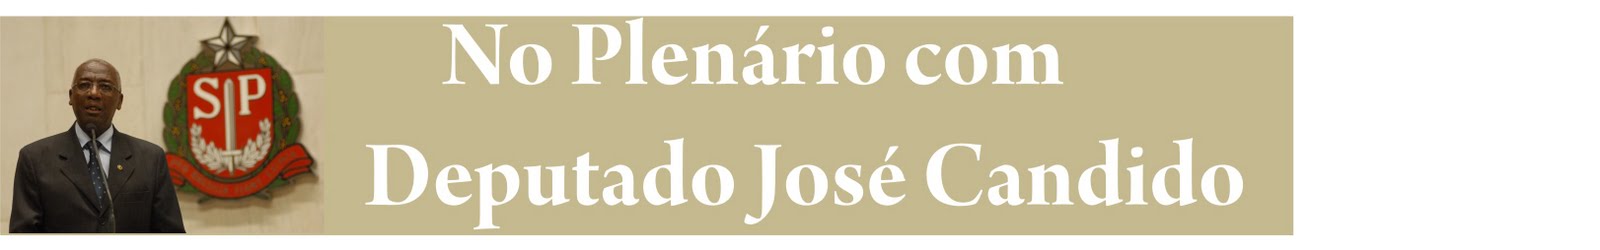 No Plenário com Dep. José Candido